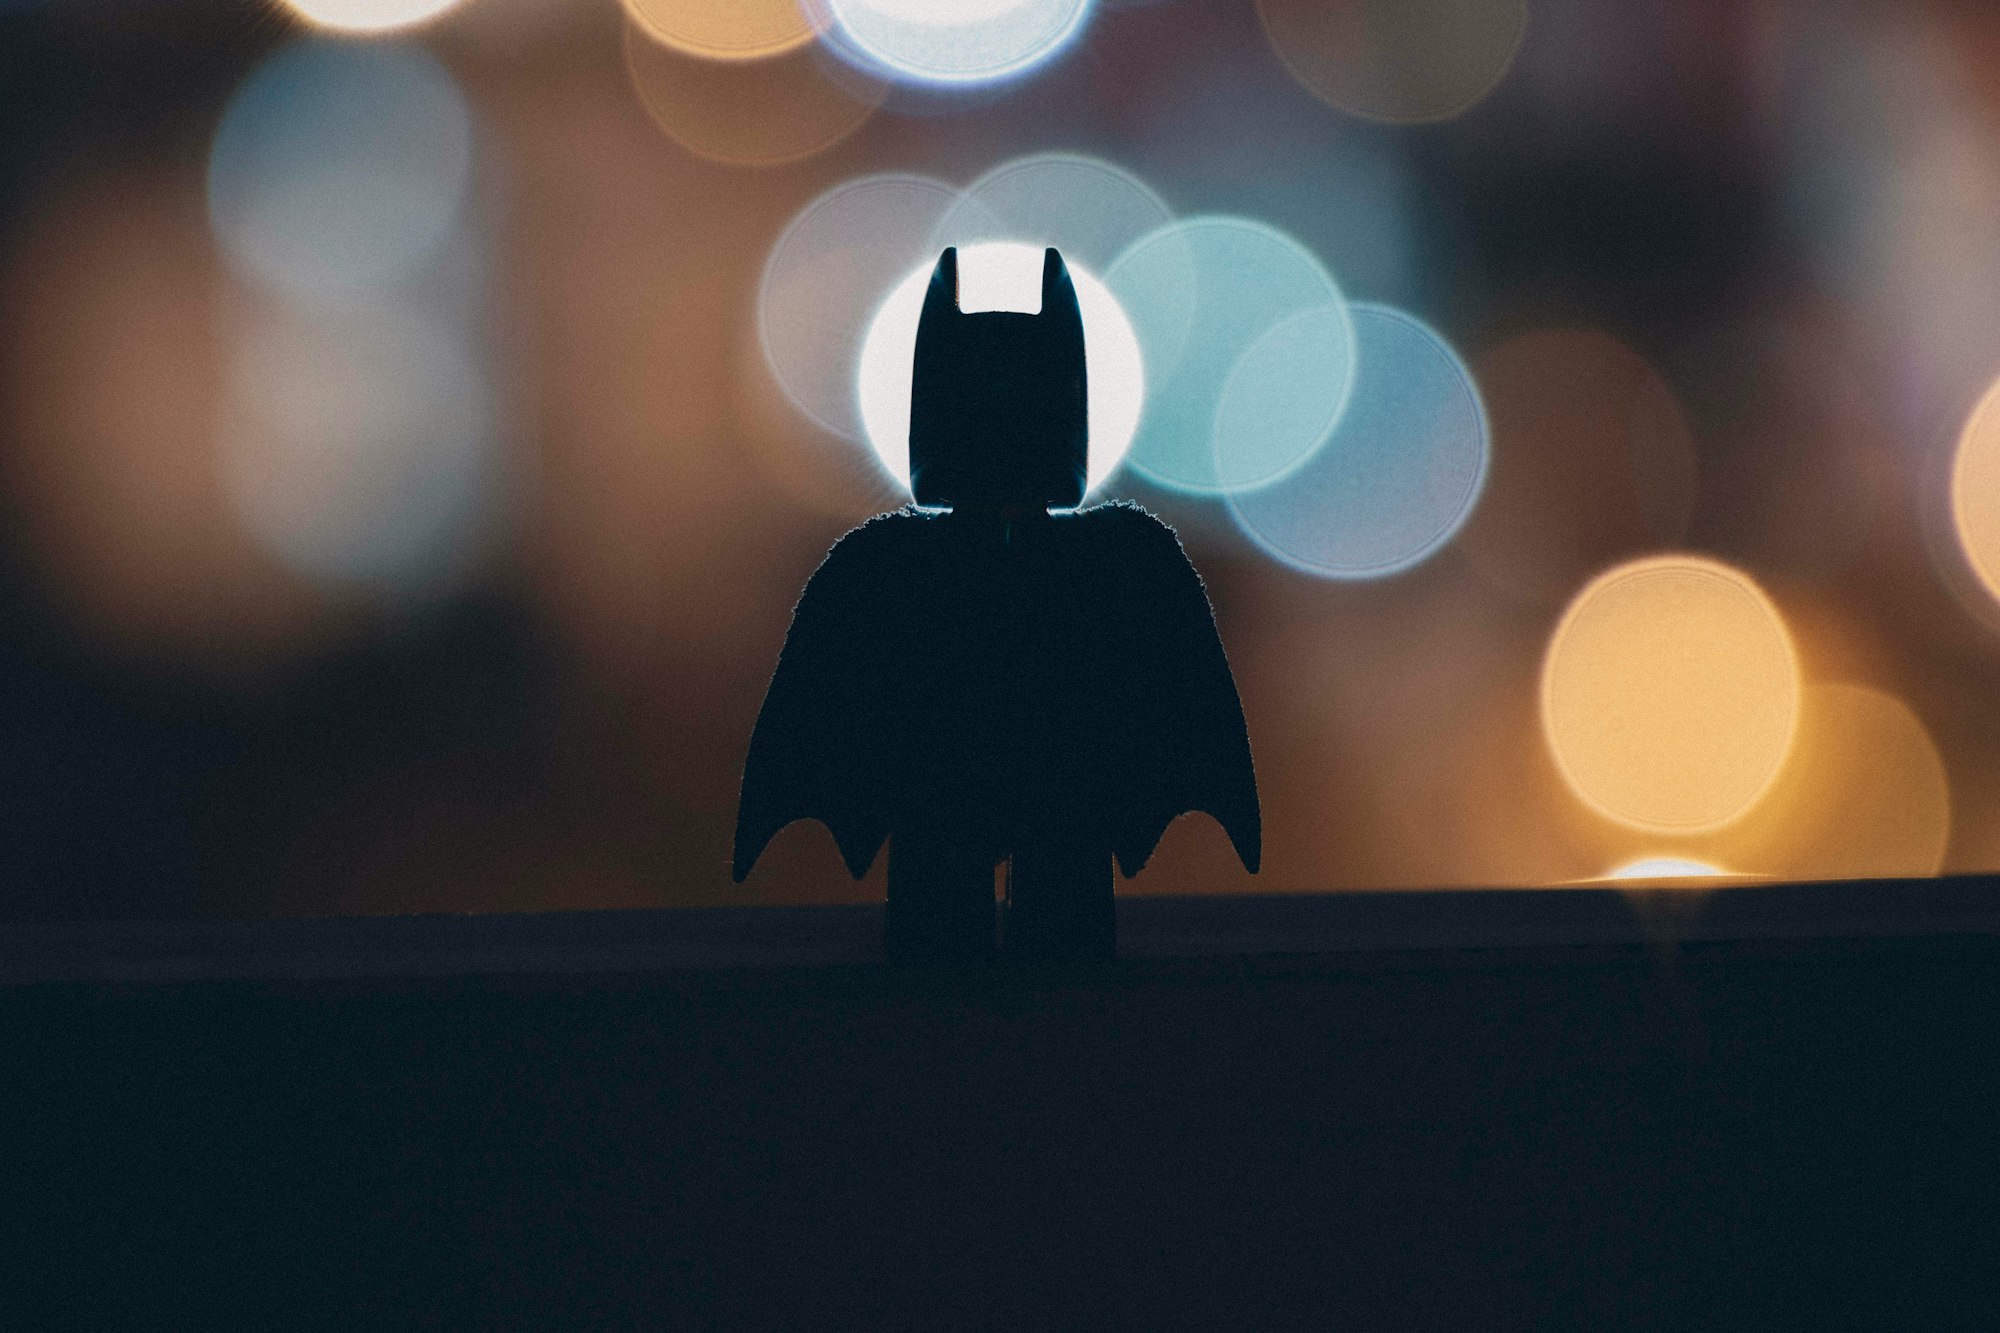 Fintech aproveita lançamento do filme “The Batman” para atrair novos clientes com o cartão exclusivo do herói